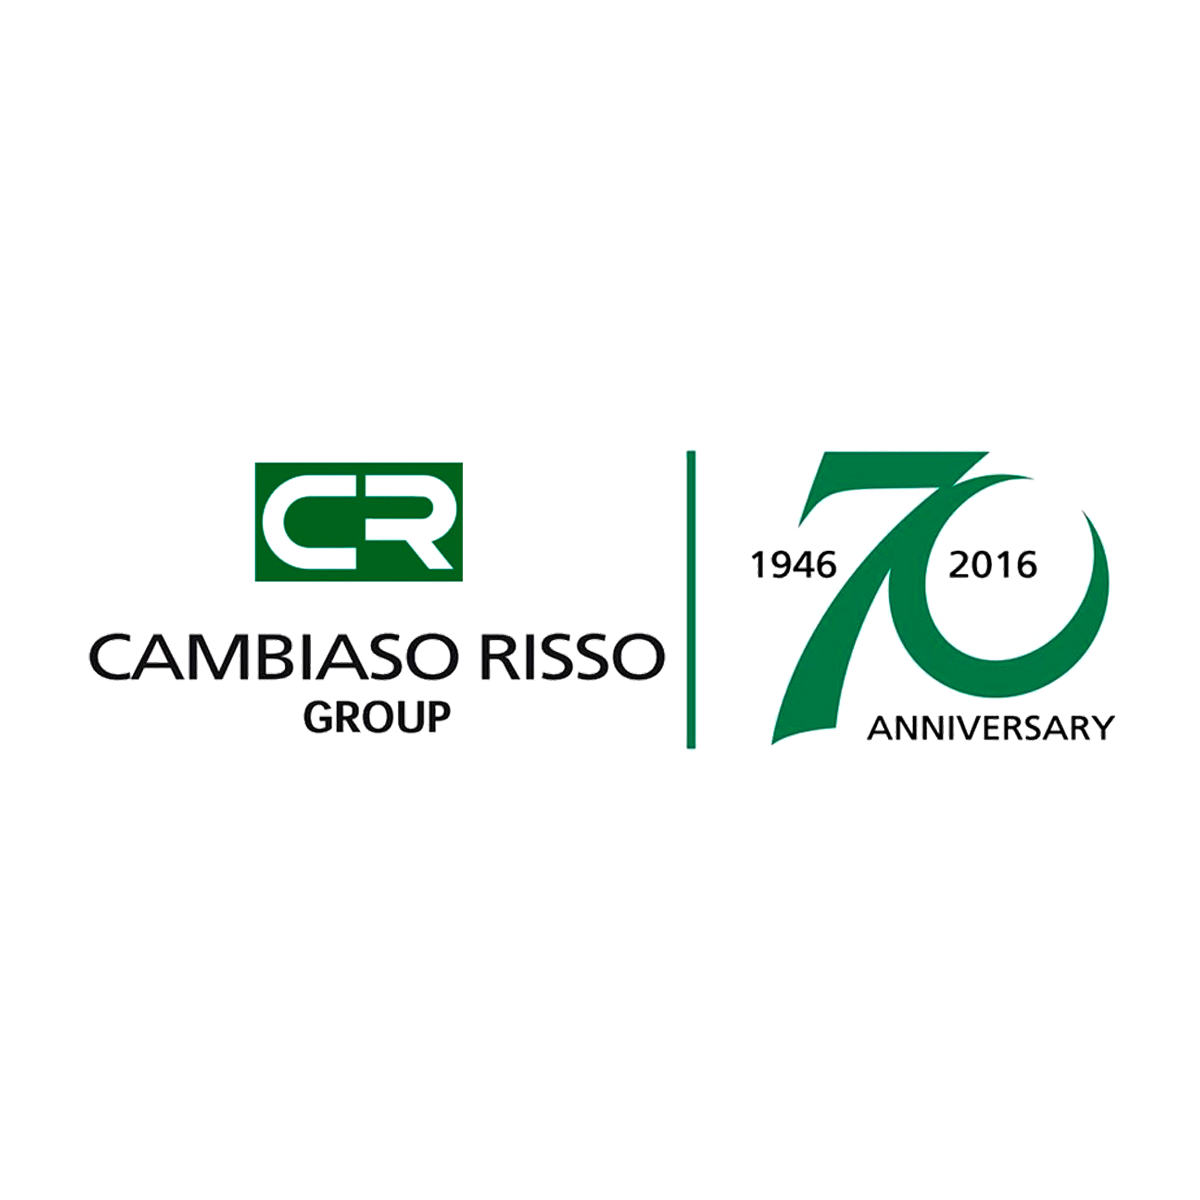 CAMBIASO RISSO GROUP